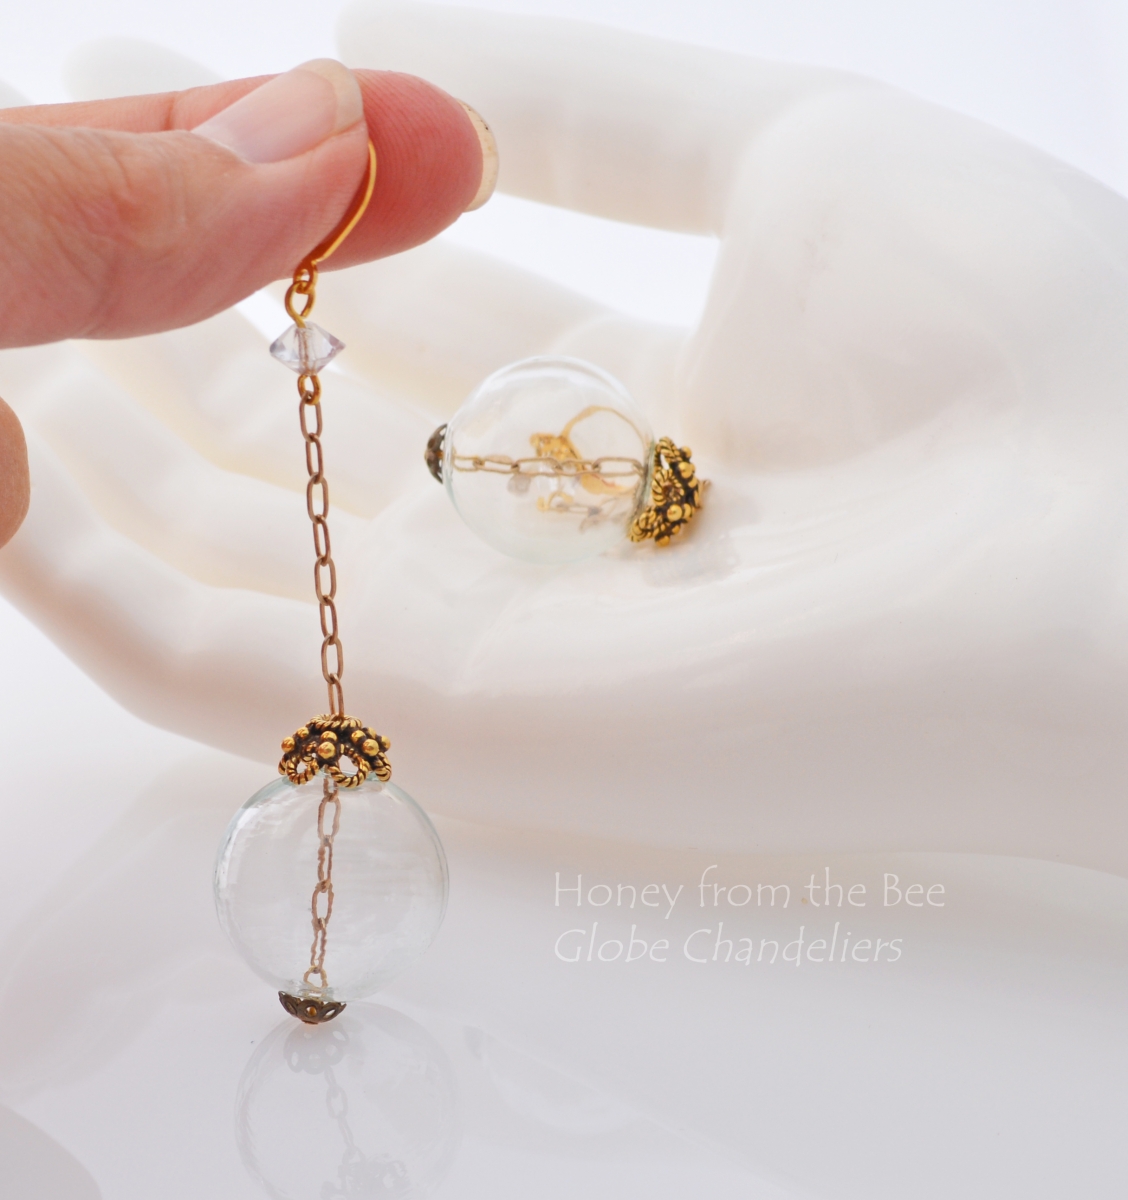 Globe Chandelier Earrings